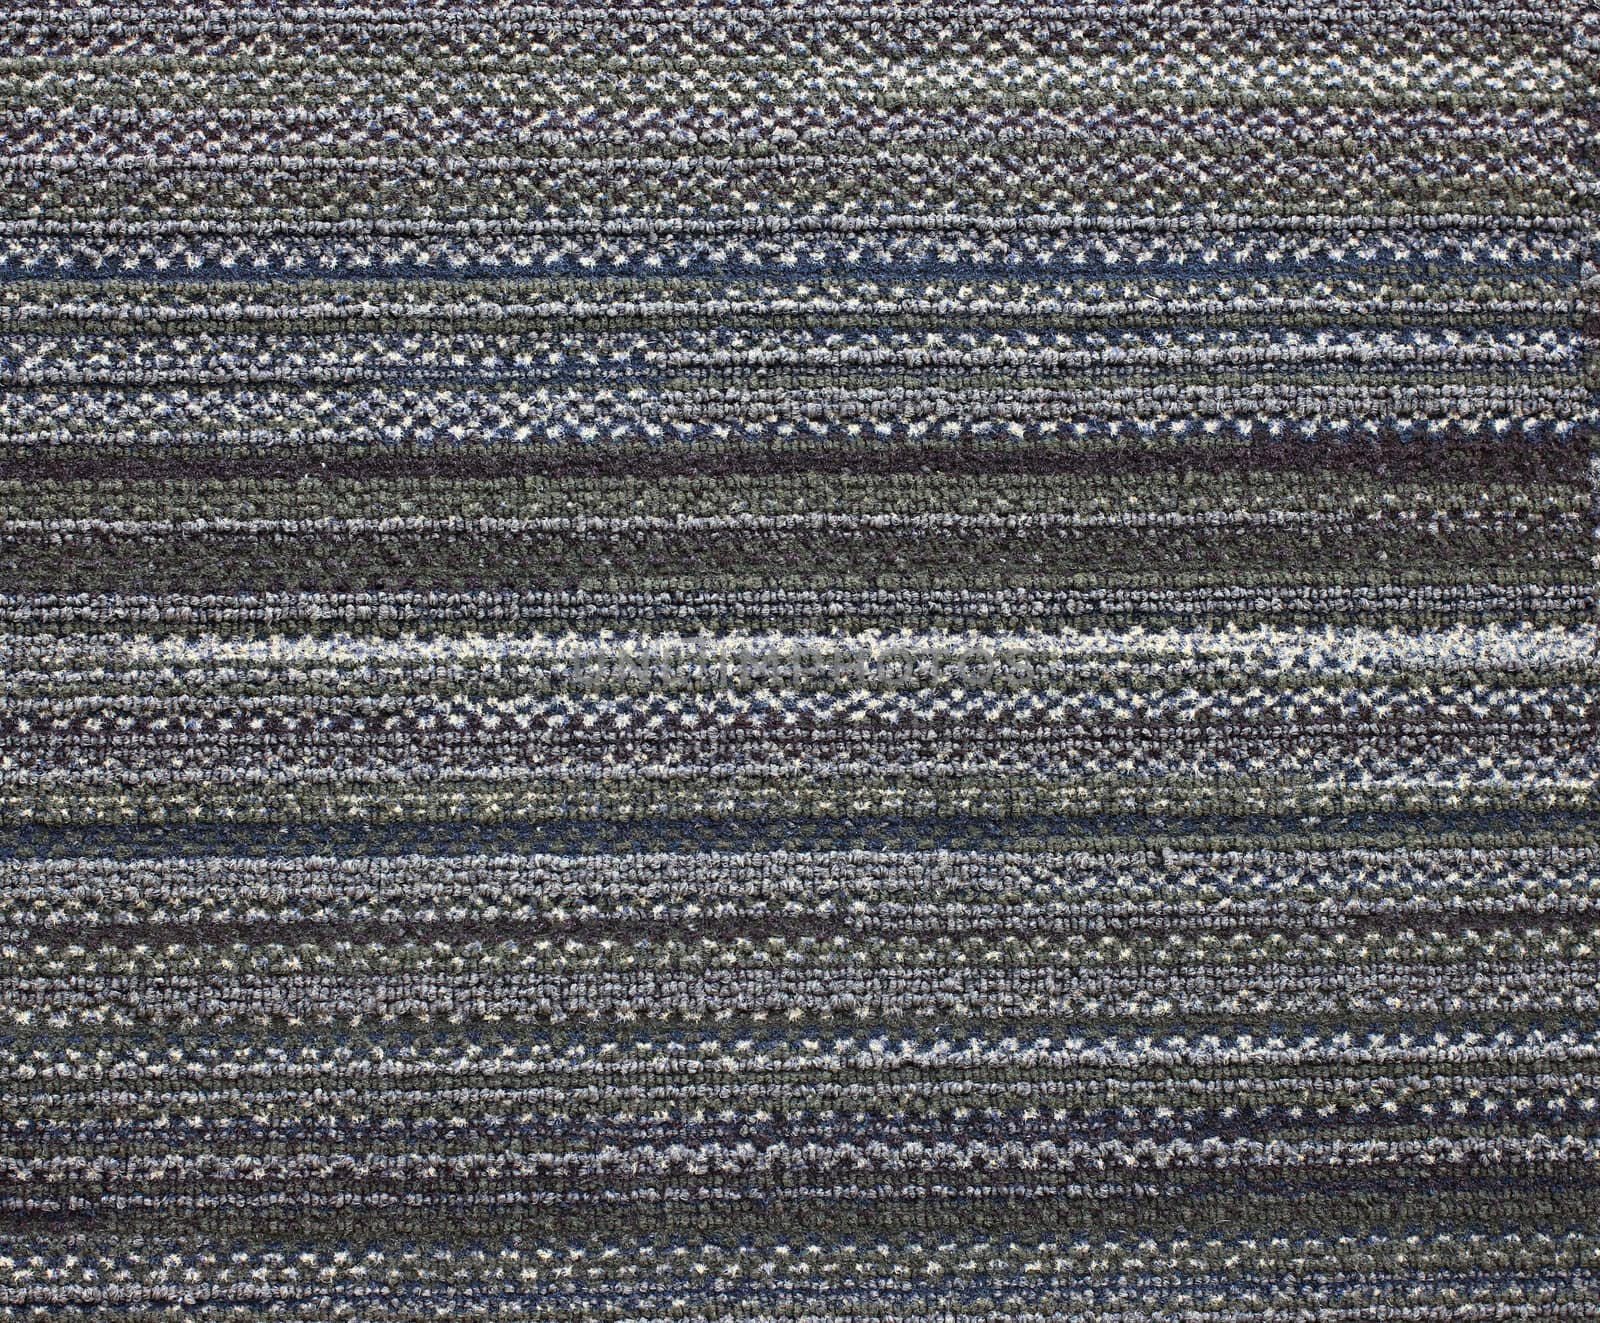 Grey carpet texture background by nuchylee